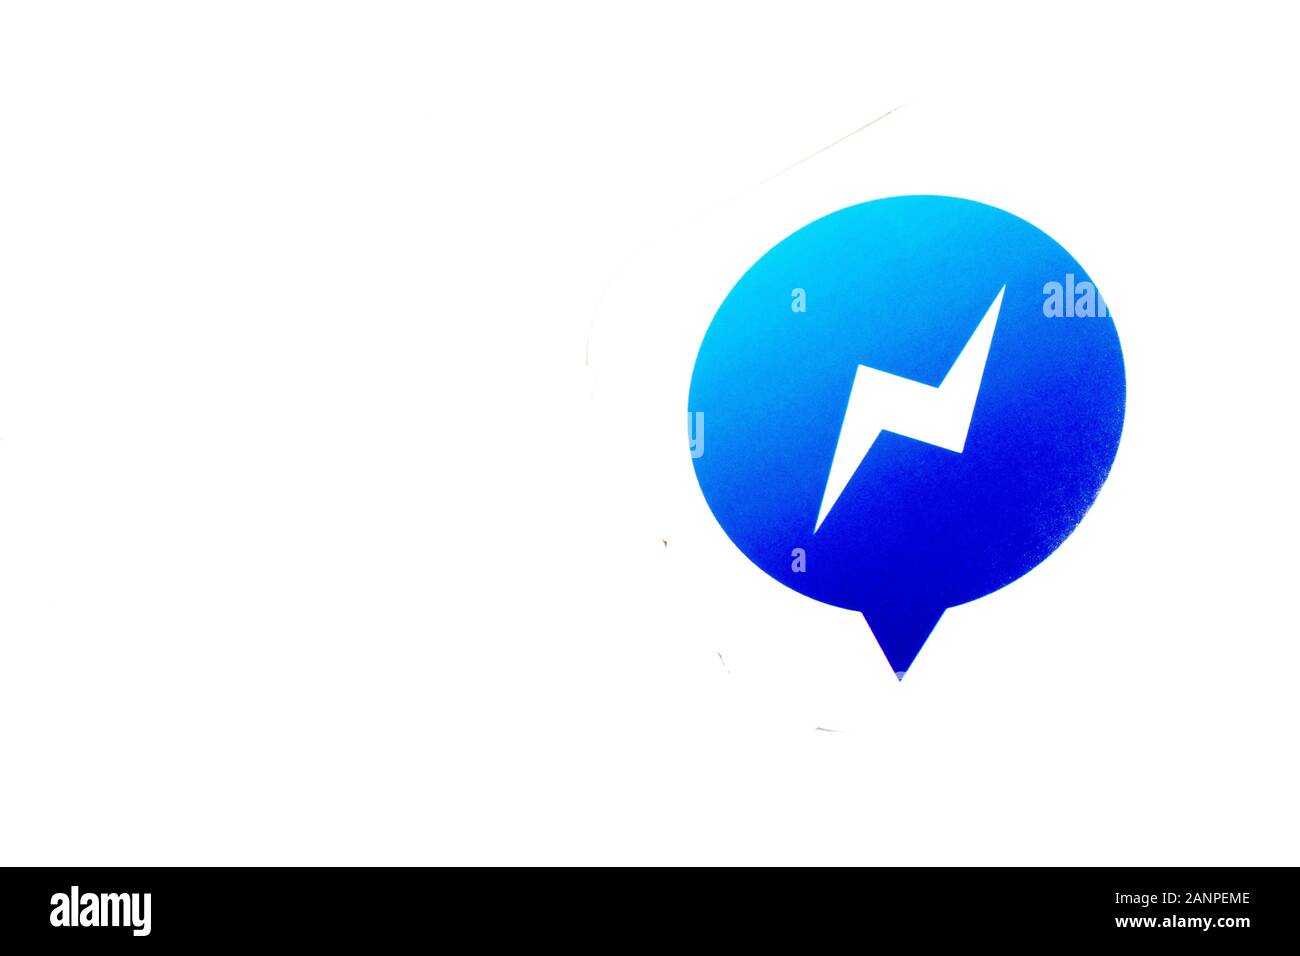 Los Angeles, Californie, États-Unis - 17 janvier 2020: Logo Facebook Messenger avec espace de copie, éditorial illustratif Banque D'Images